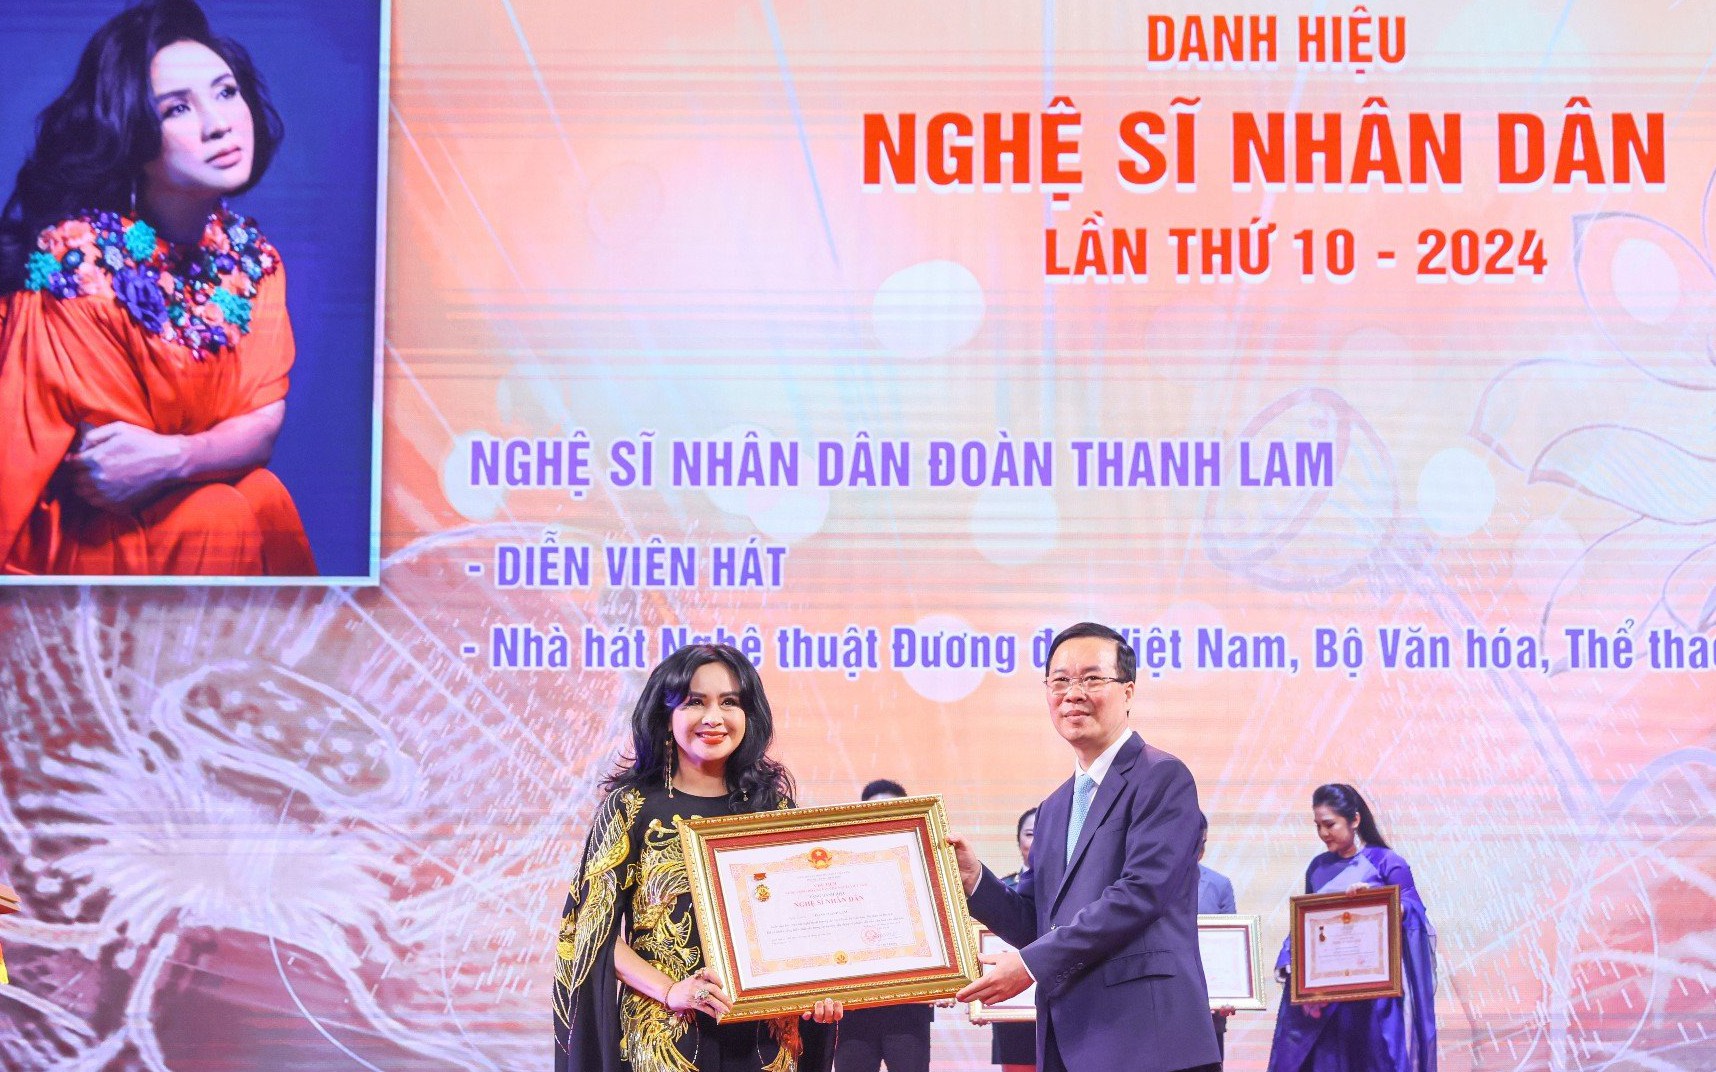 Vừa nhận danh hiệu NSND, Thanh Lam tiết lộ đám cưới trong năm nay